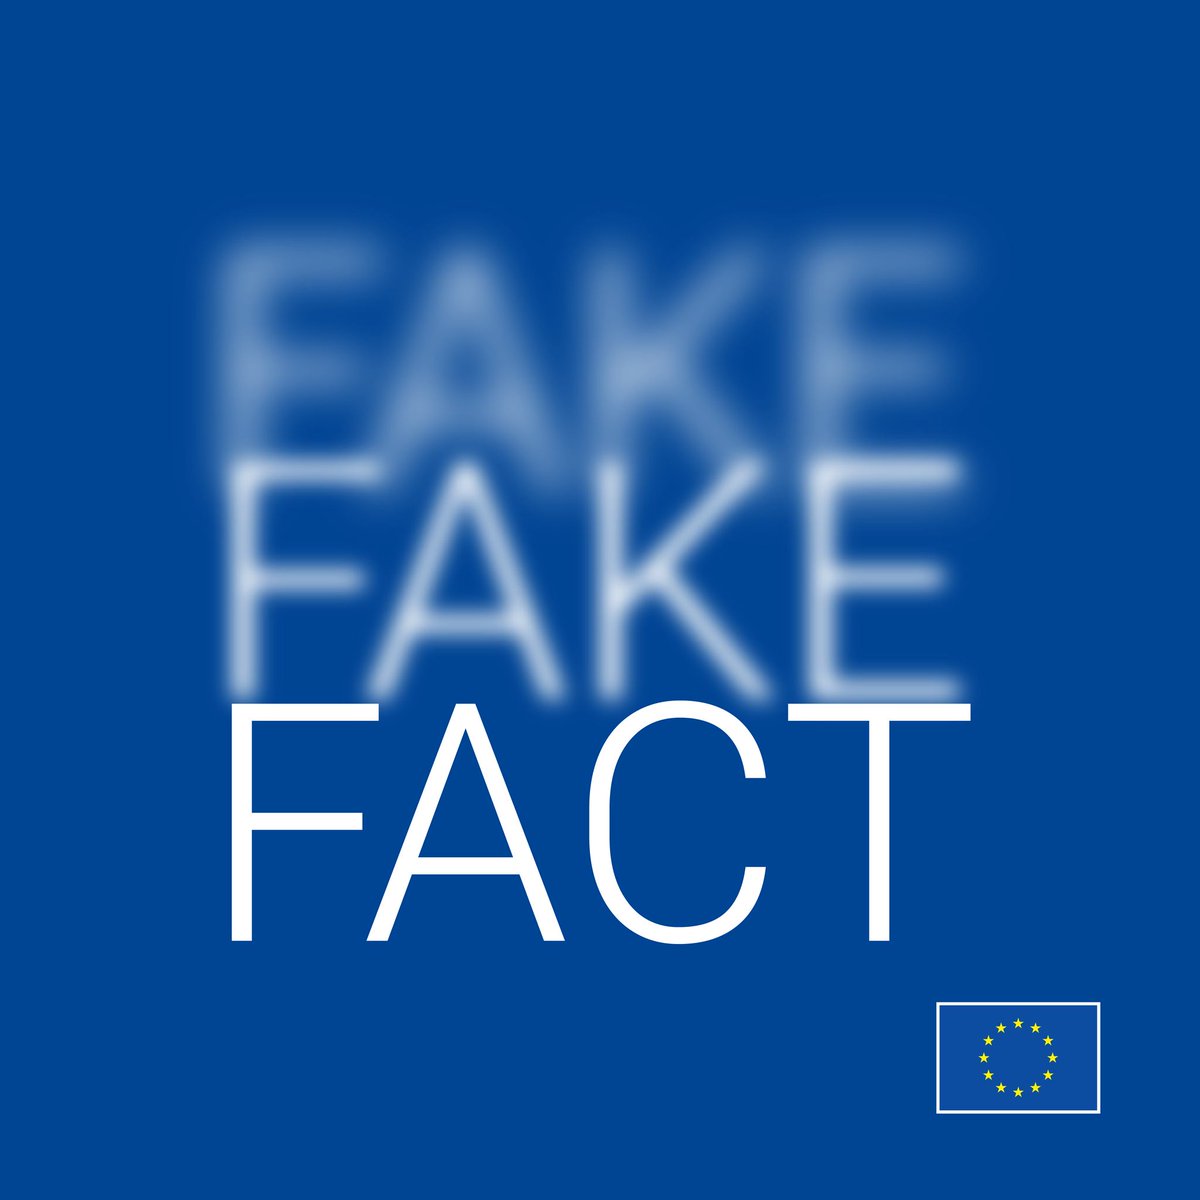 Prima di premere il pulsante condividi, non dimenticare di: 📷 Verifica la fonte dell'informazione; 📷 Attenzione ai contenuti sponsorizzati fuorvianti; 📷 Controlla l'autenticità dell'immagine; 📷 Usa un sito di fact-checking. #EuropeanUnion #EUvsDisinfo #FactsMatter